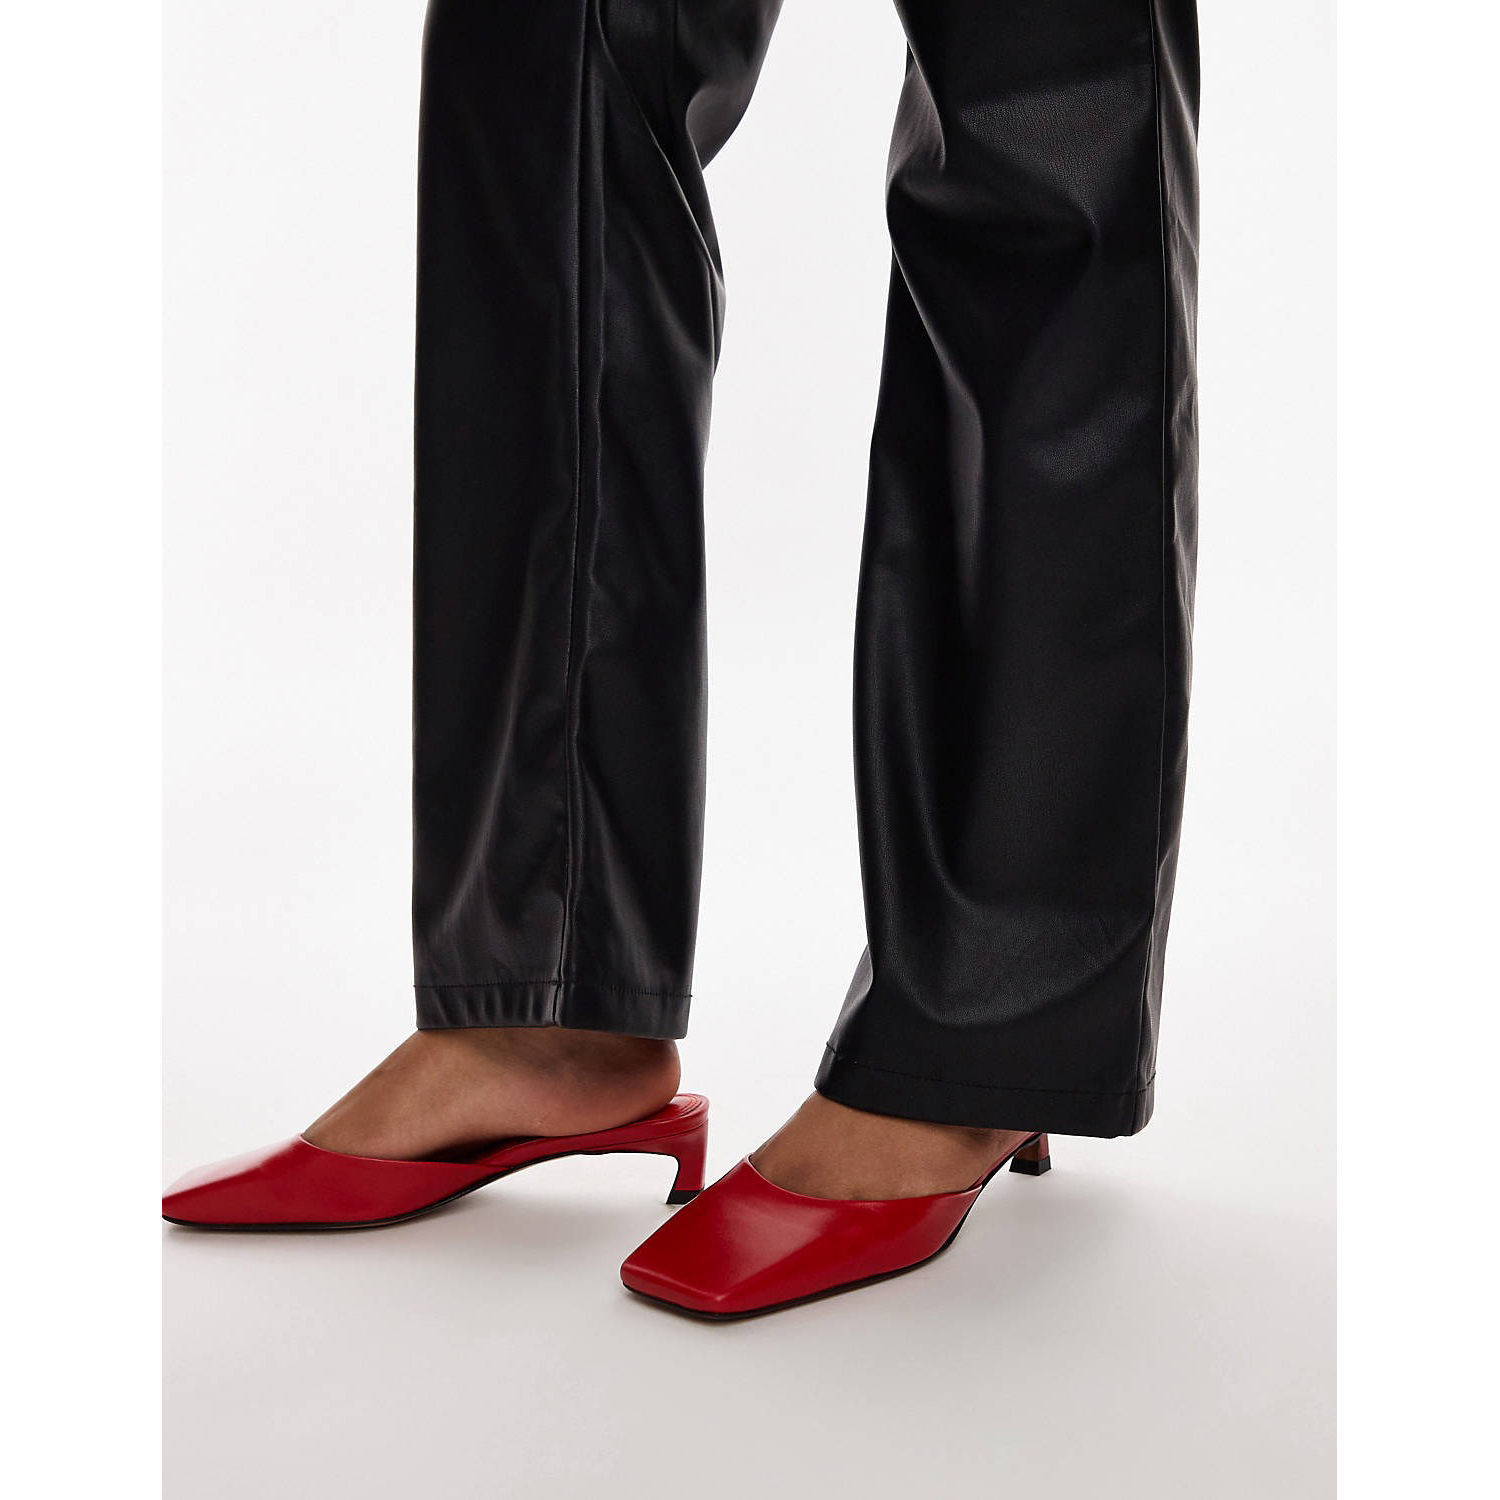 Мюли Topshop Audrey Premium Leather Mid Heeled Square Toe, красный мюли кожаные